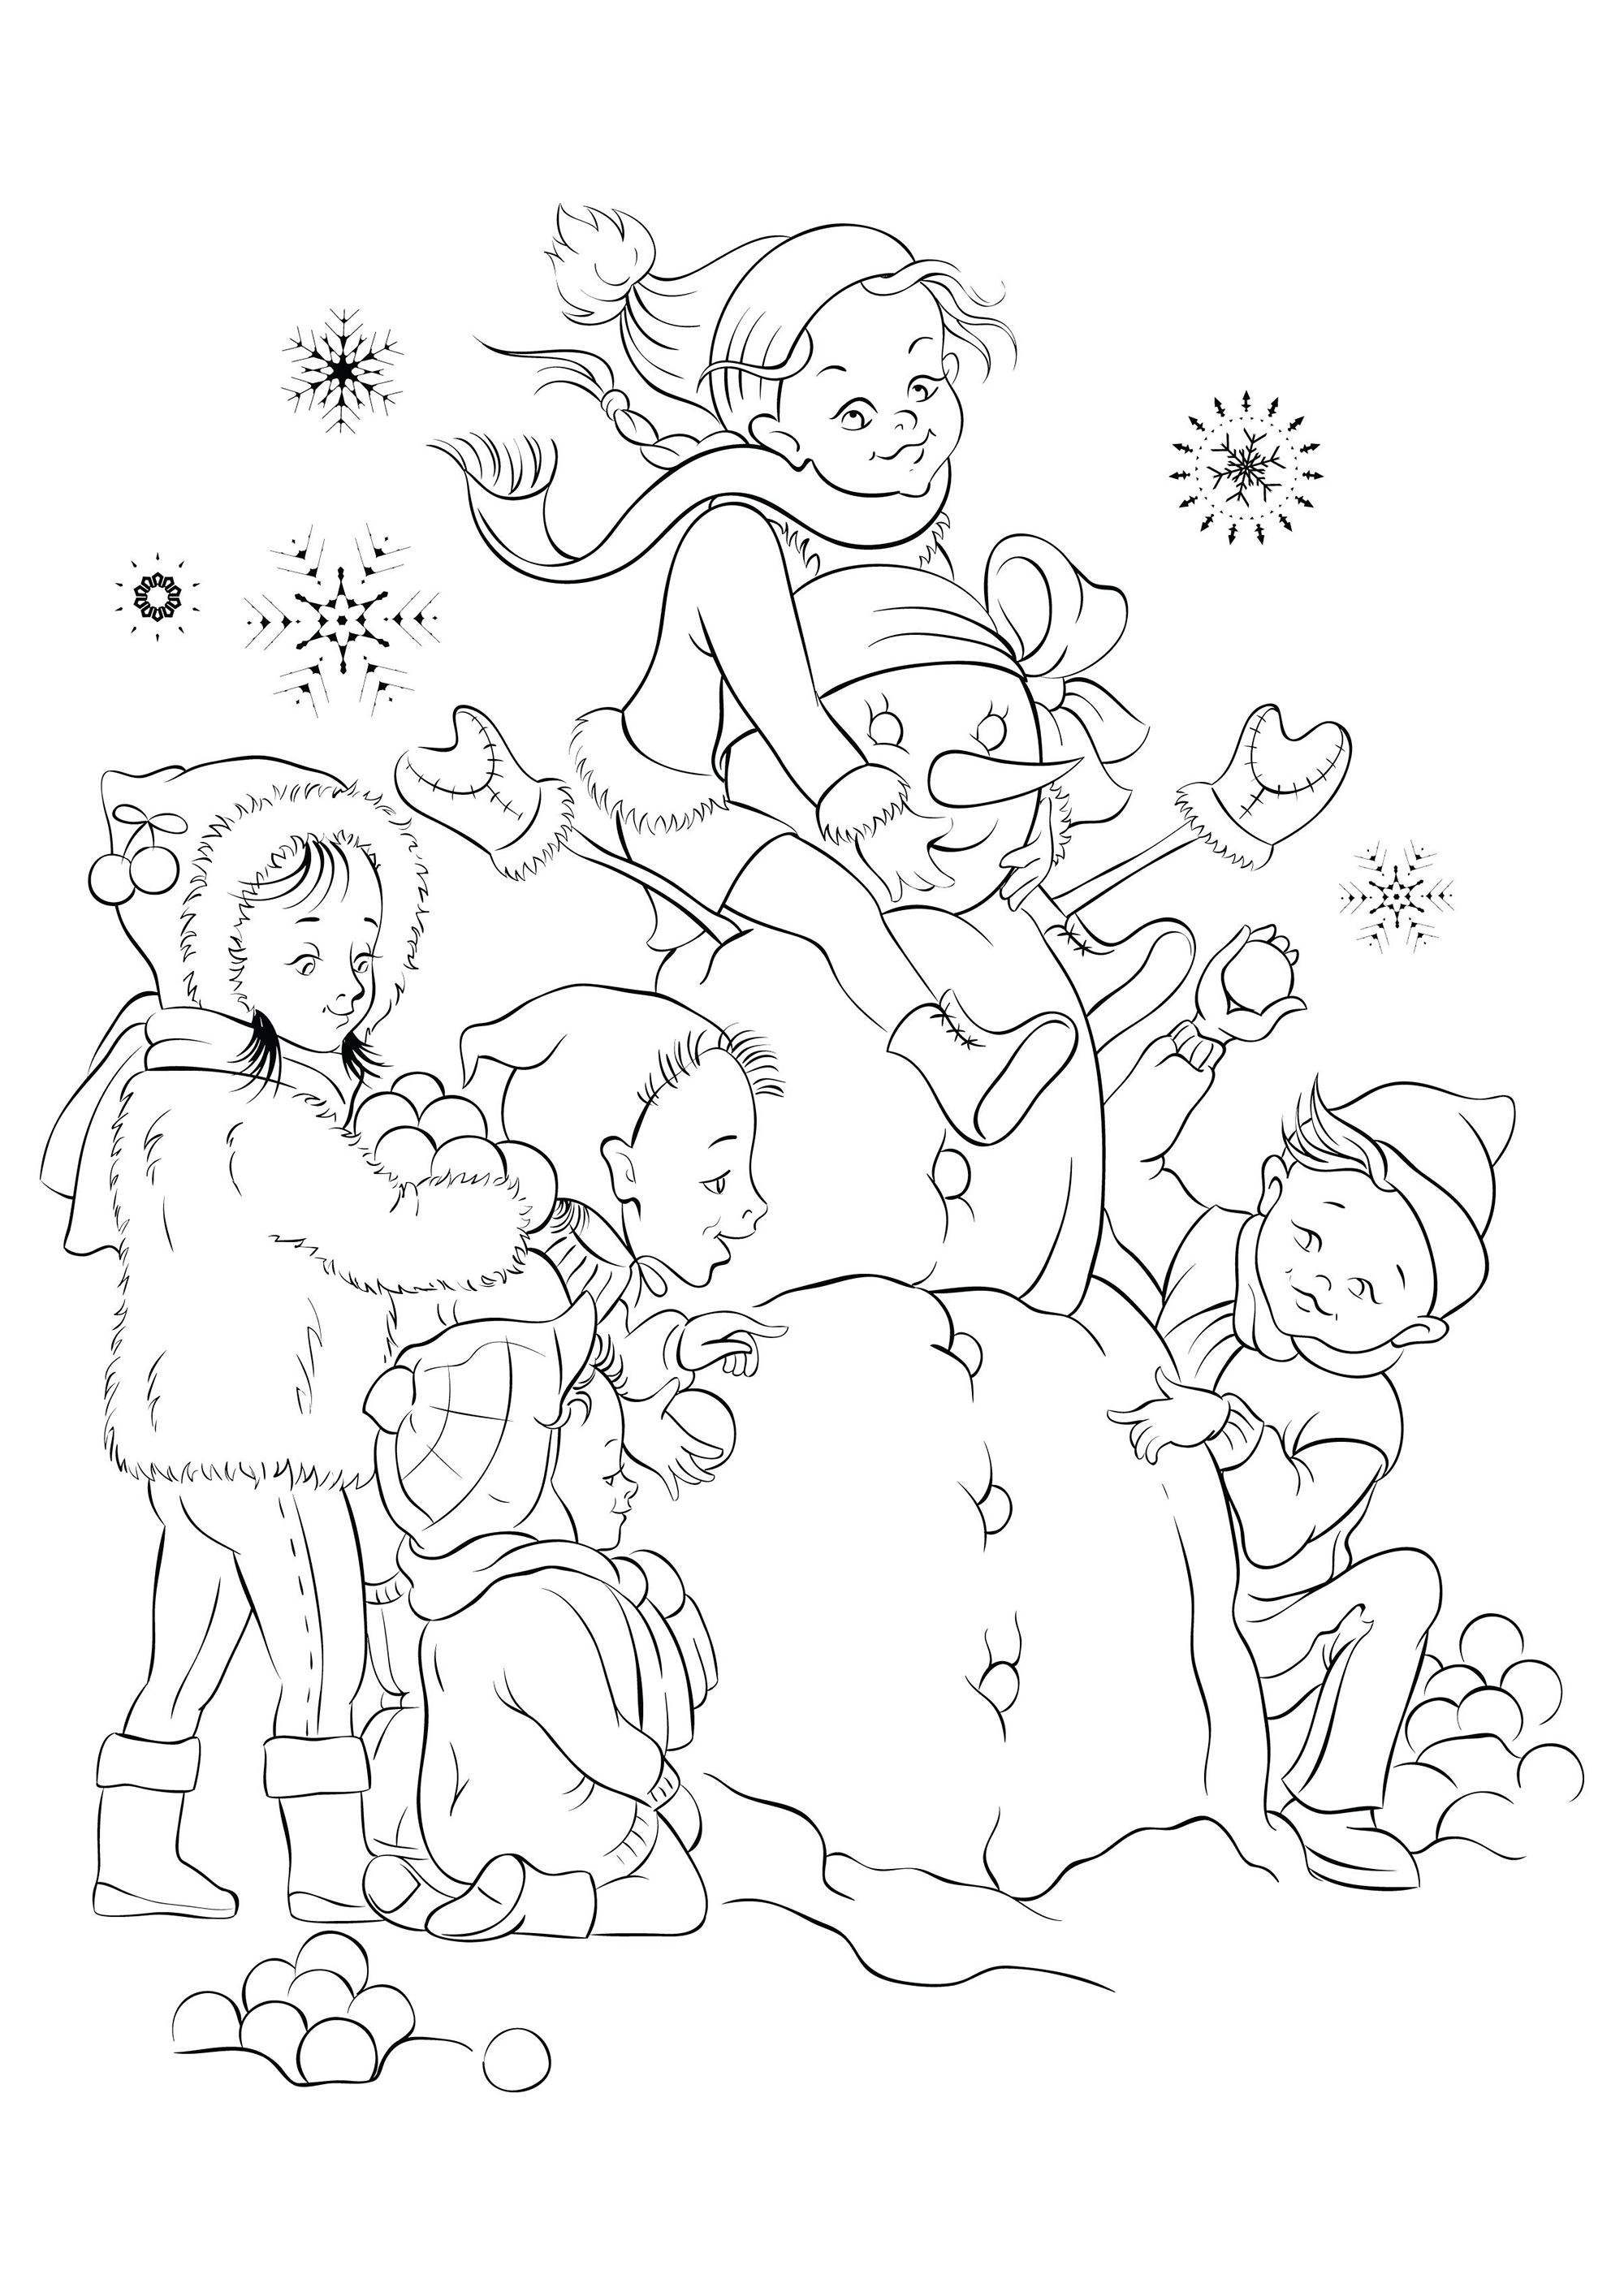 Kinder und der Schneemann, den sie gemeinsam mit frischem Schnee gebaut haben